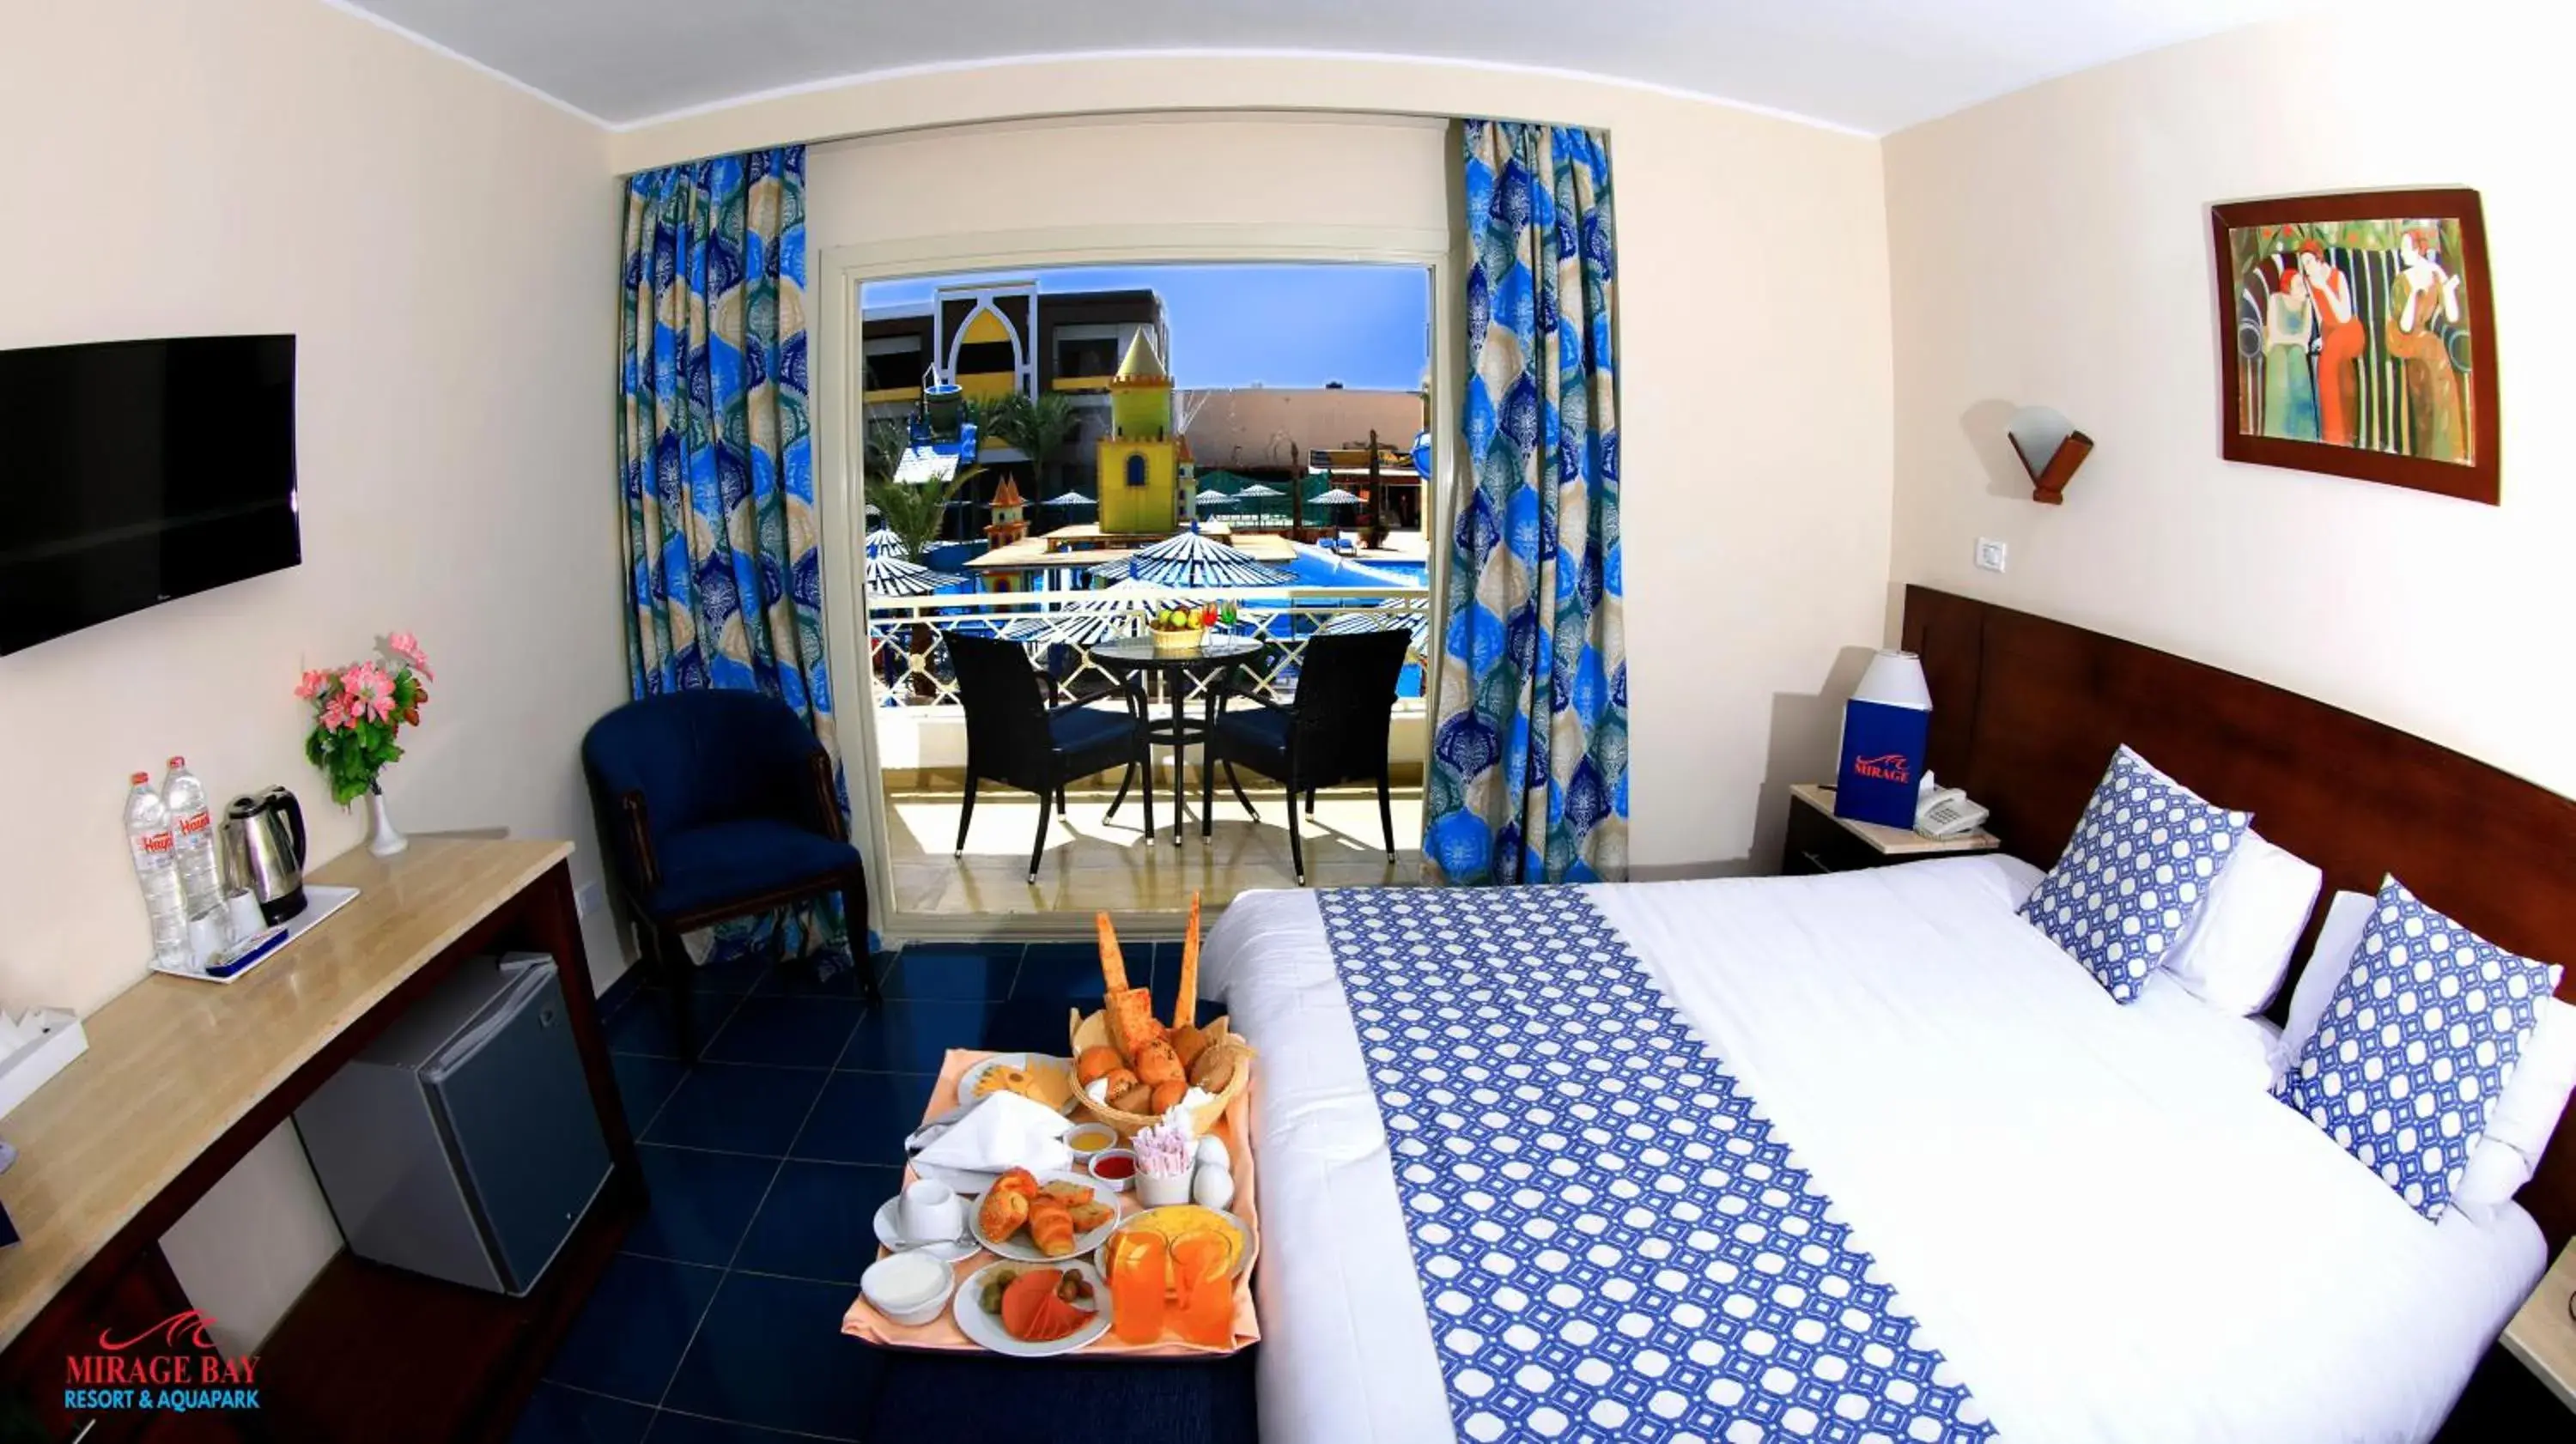 Bedroom in Mirage Bay Resort & Aqua Park